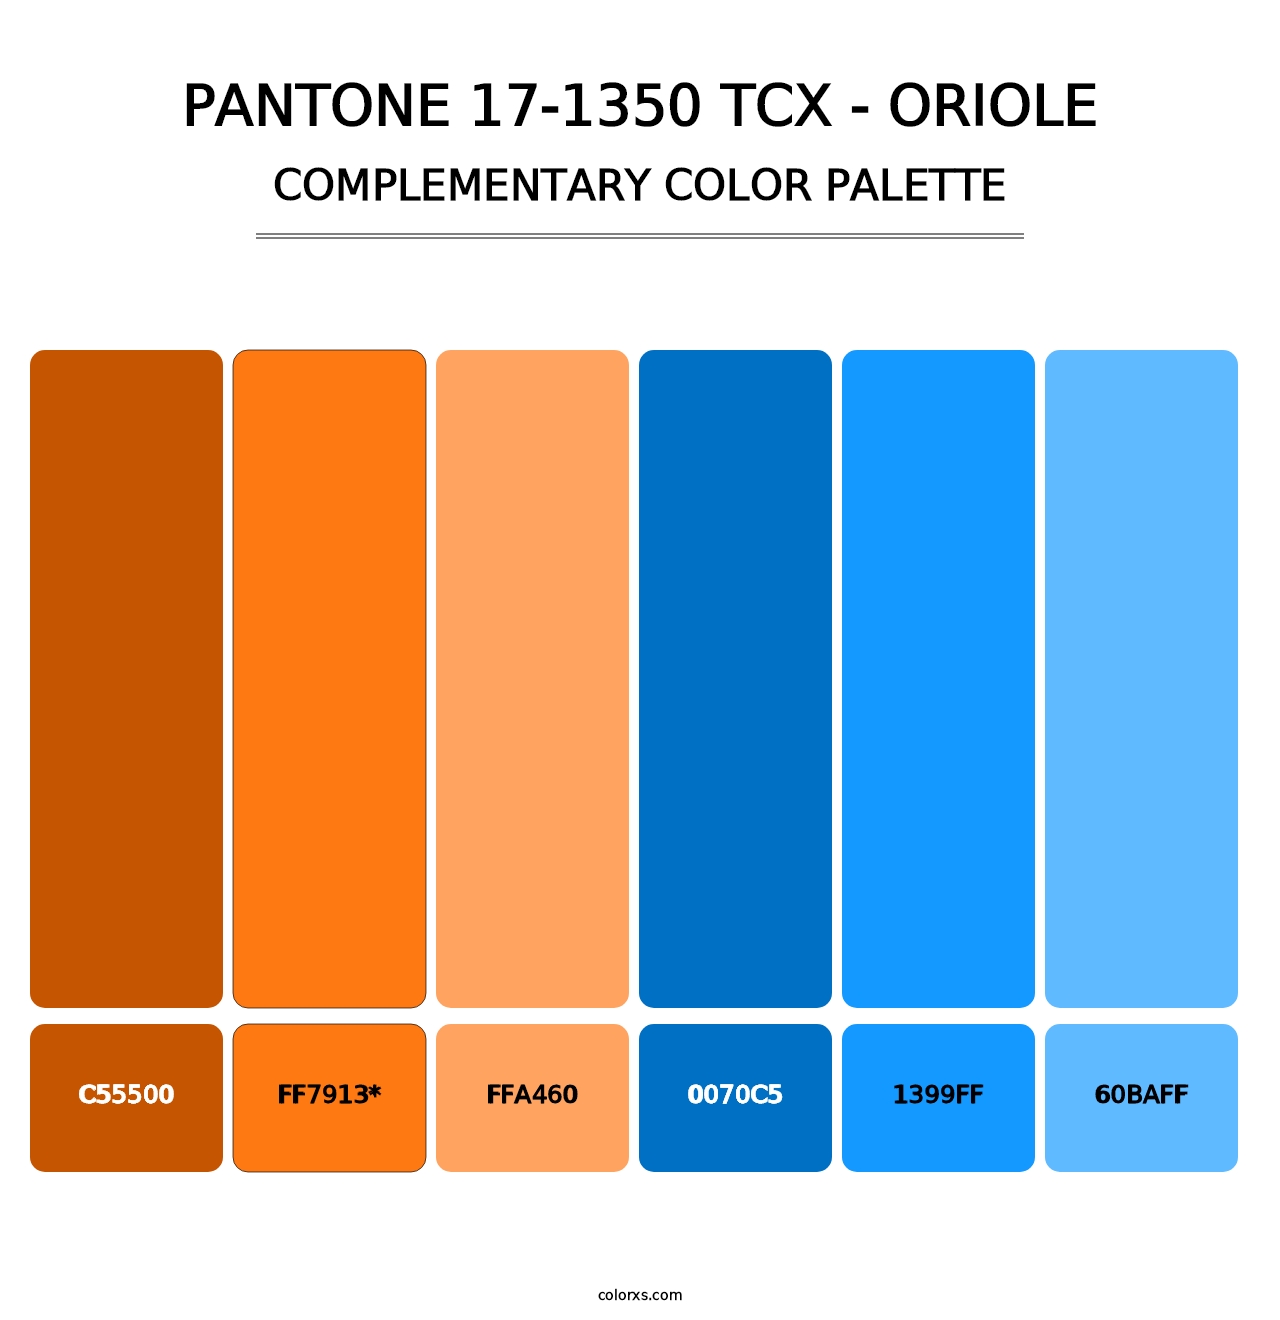 PANTONE 17-1350 TCX - Oriole - Complementary Color Palette